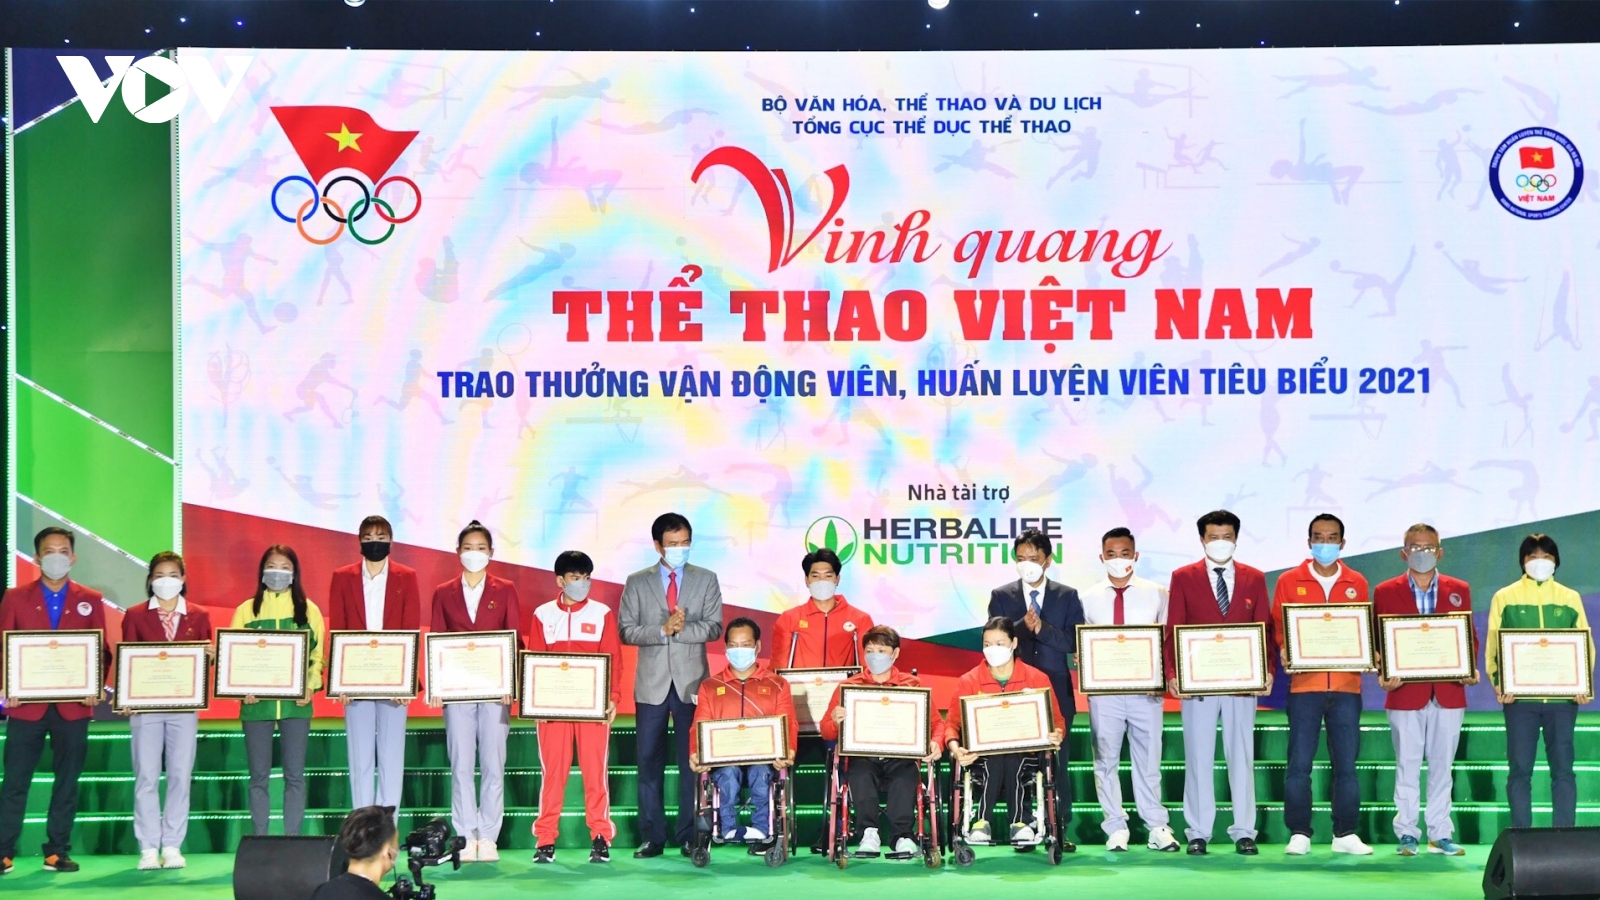 HLV Park Hang Seo và Quang Hải vắng mặt ở Lễ vinh danh của Thể thao Việt Nam